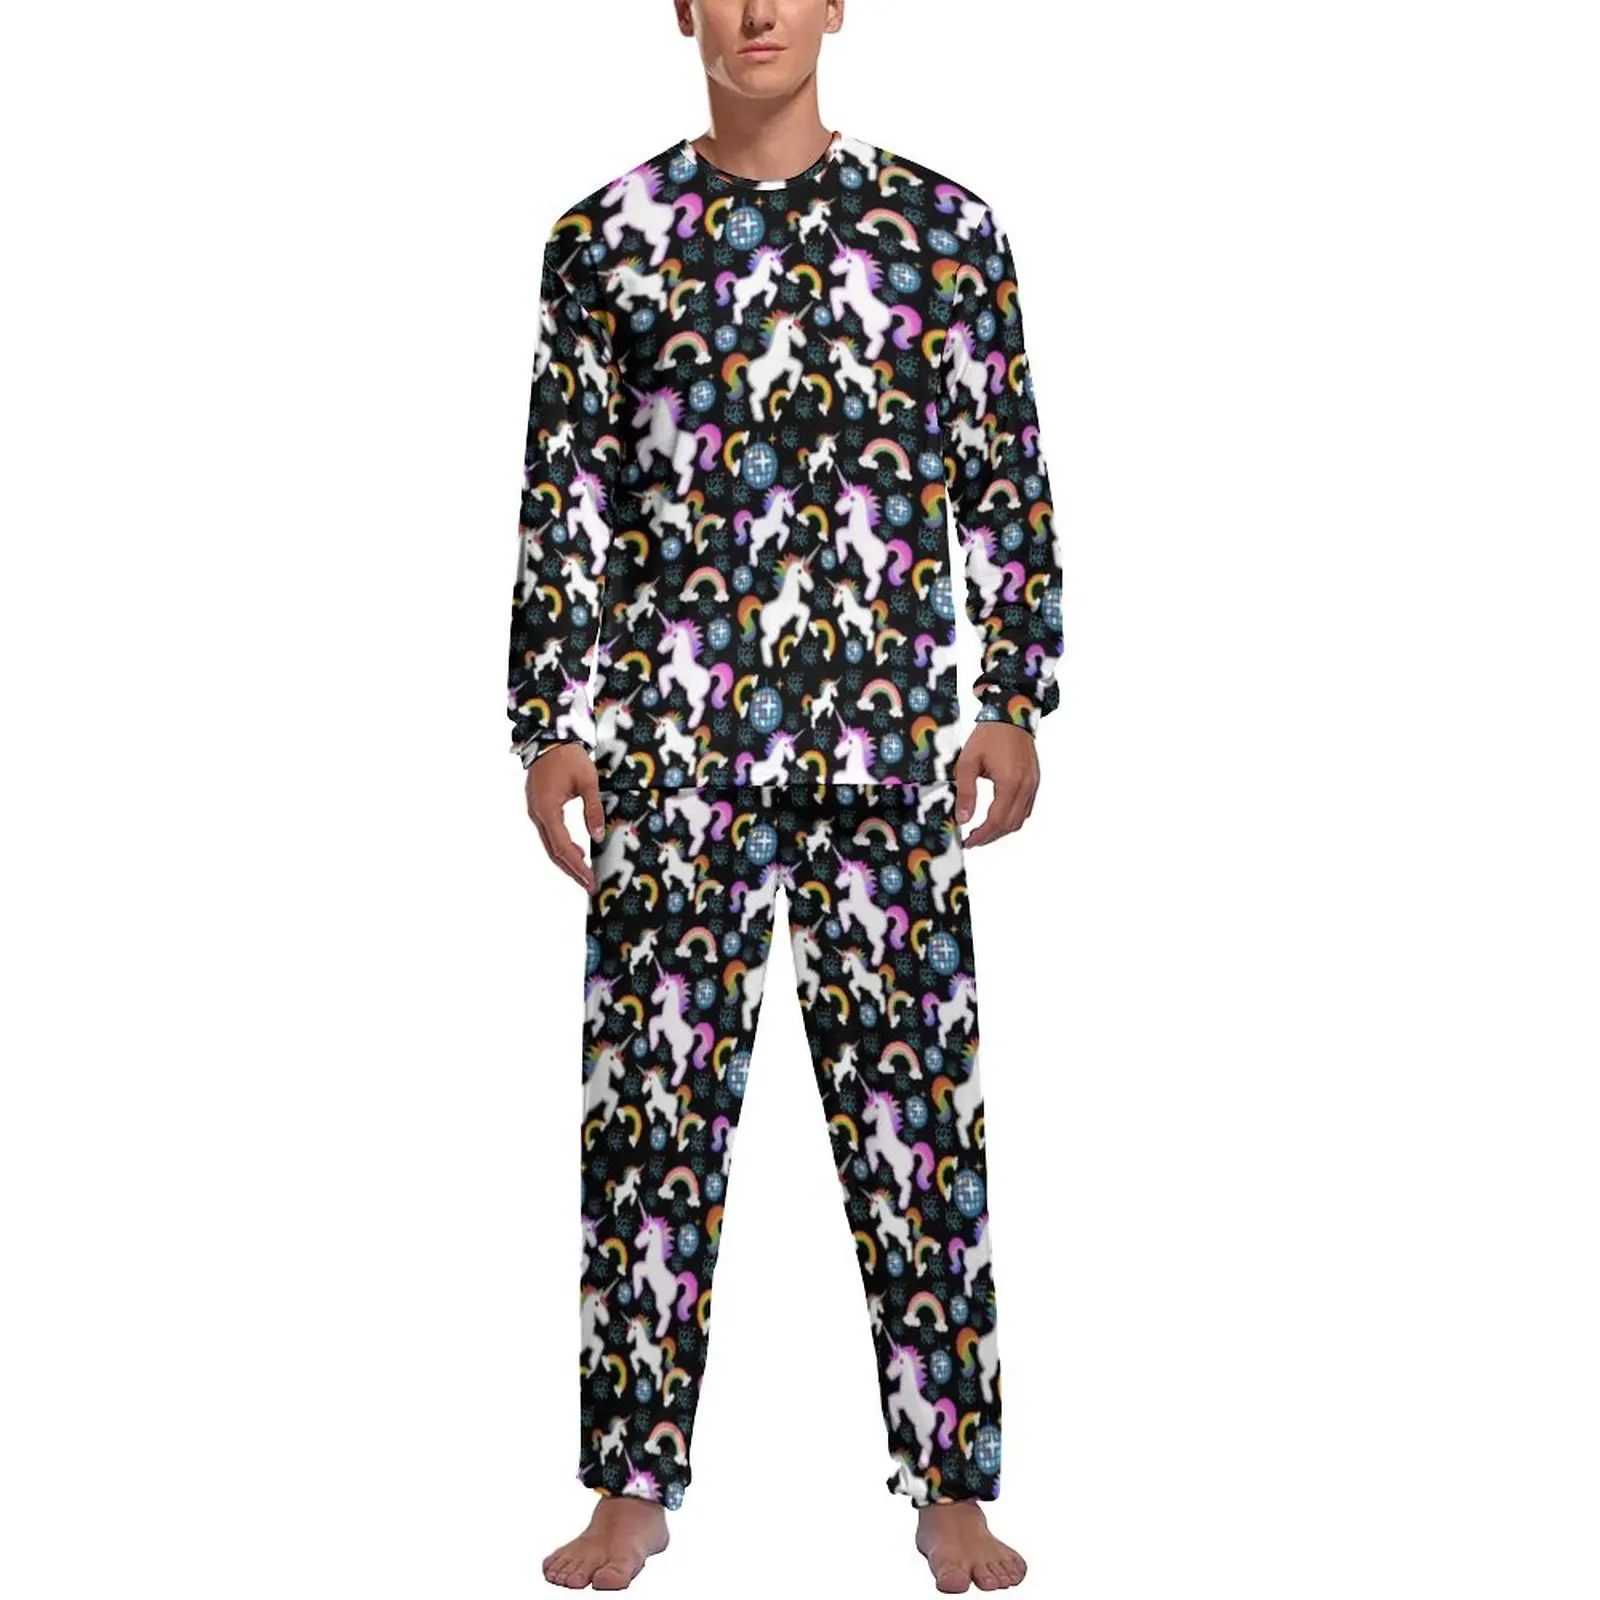 Cute Unicorn Pajamas Long Sleeves Rainbows Animal Print 2 Piece Casual Pajama Sets Daily Man Printed Romantic Nightwear